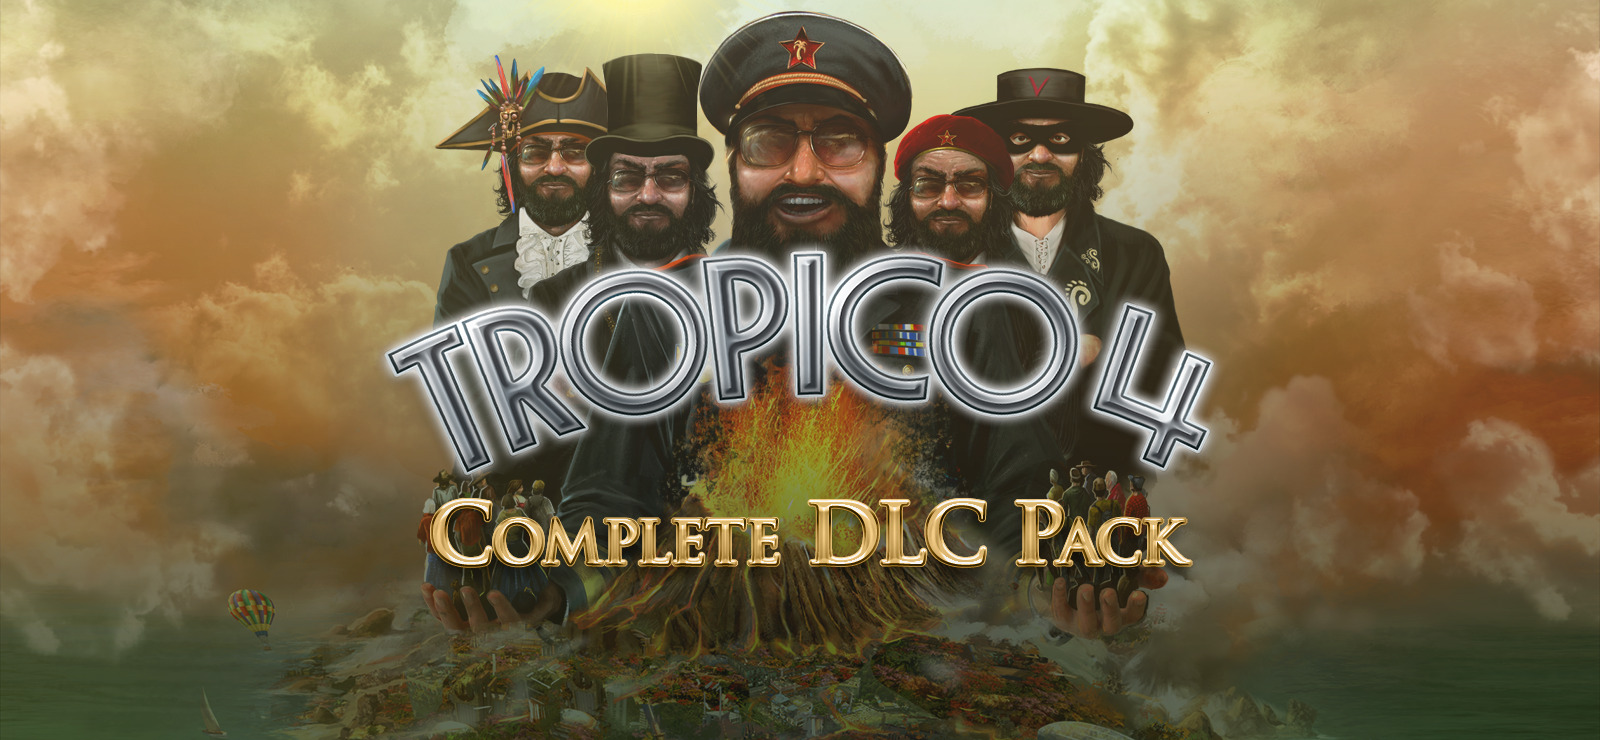 Tropico 4 Complete Dlc Pack On Gog Com